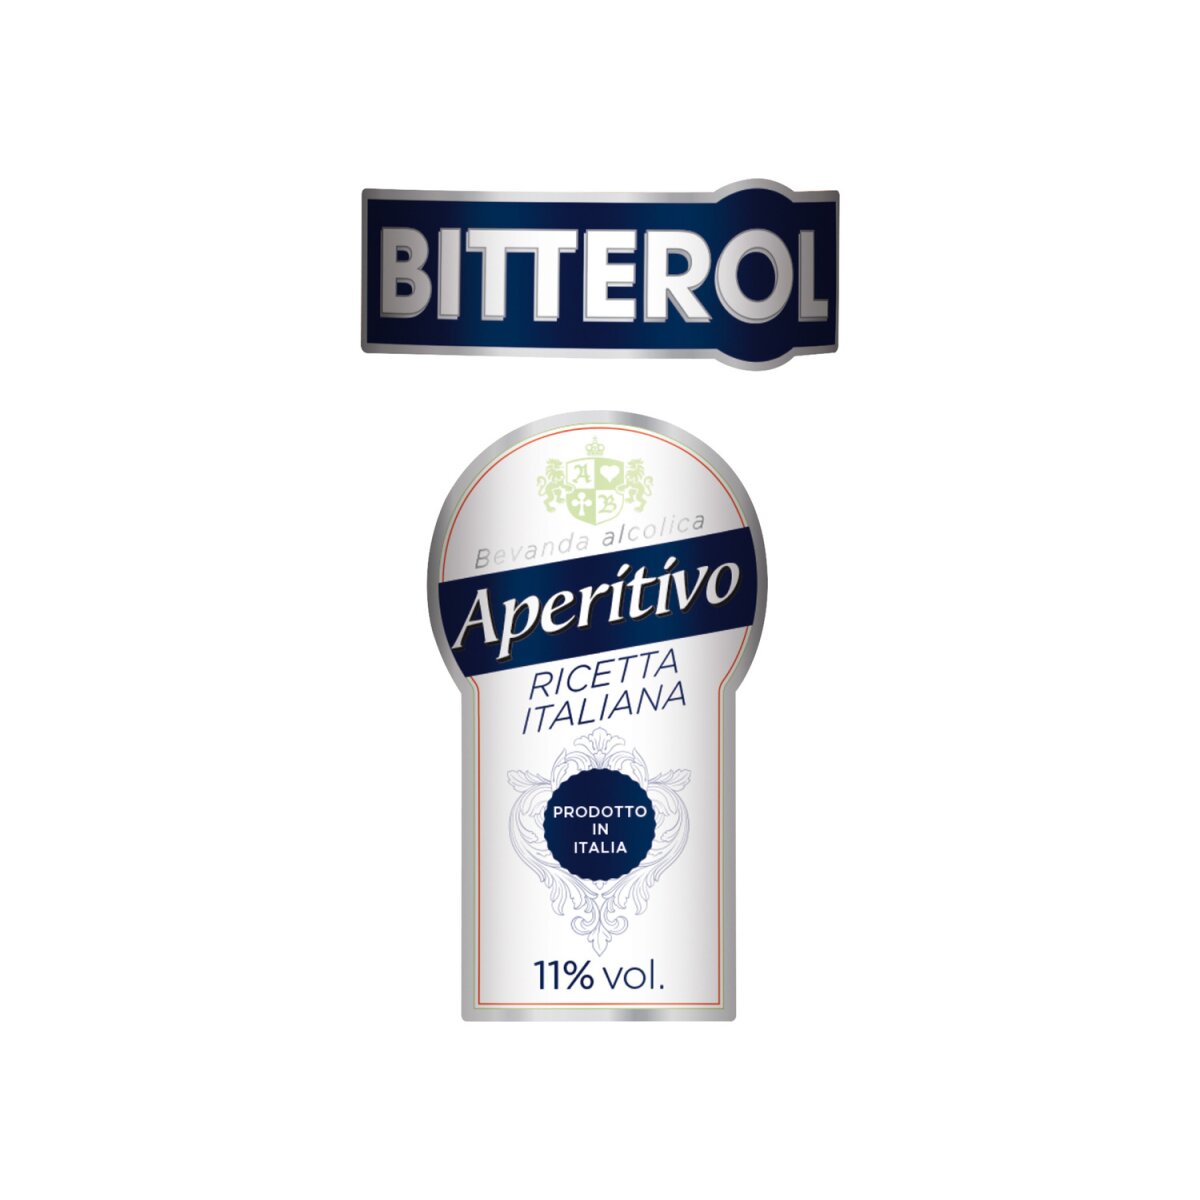 BITTEROL Aperitivo Italiano 11% Vol, 3,99 €